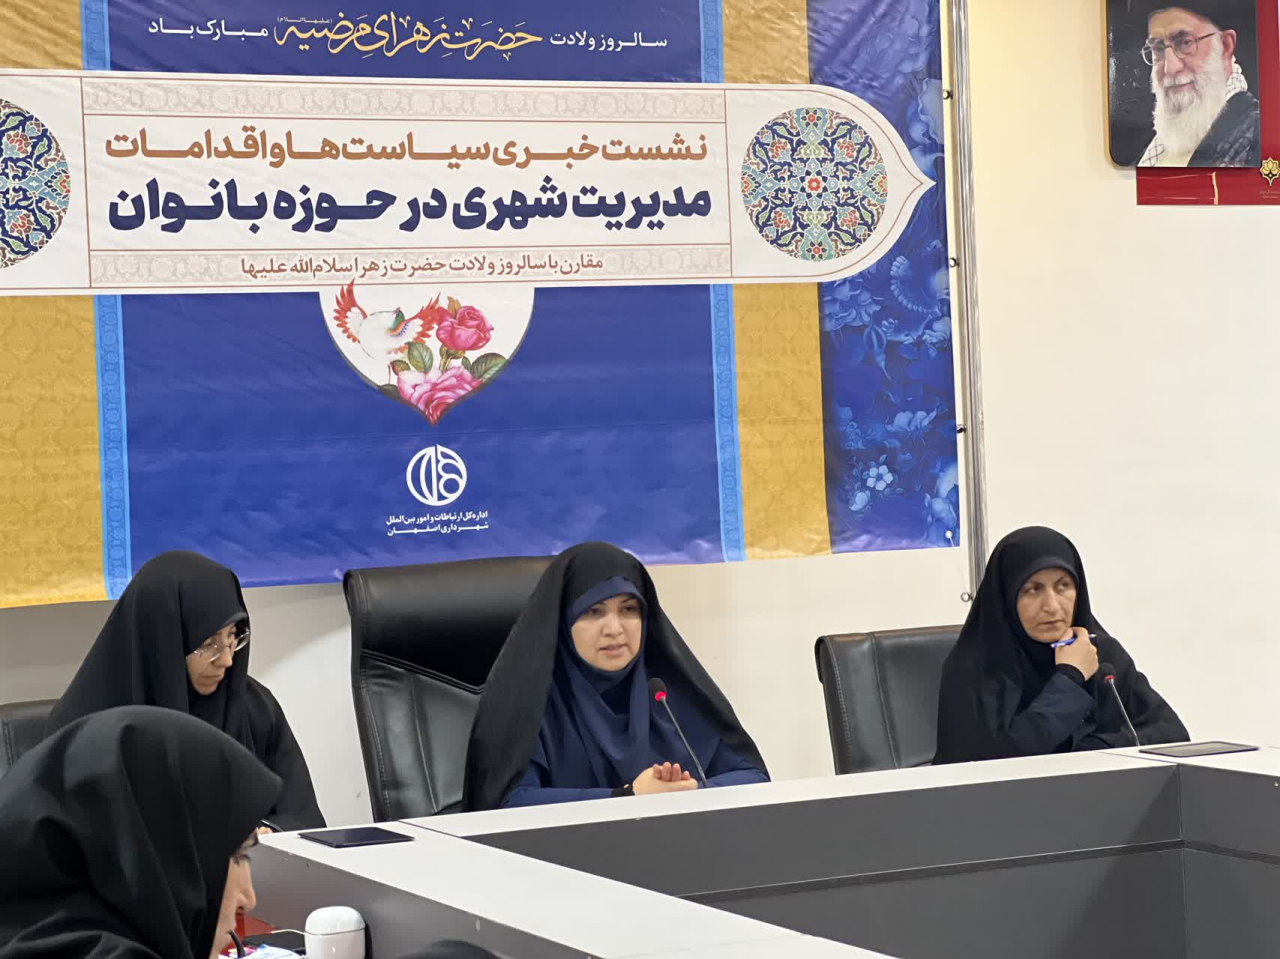 هویت، نشاط و امید محورهای فعالیت کمیسیون بانوان شورای اسلامی شهر